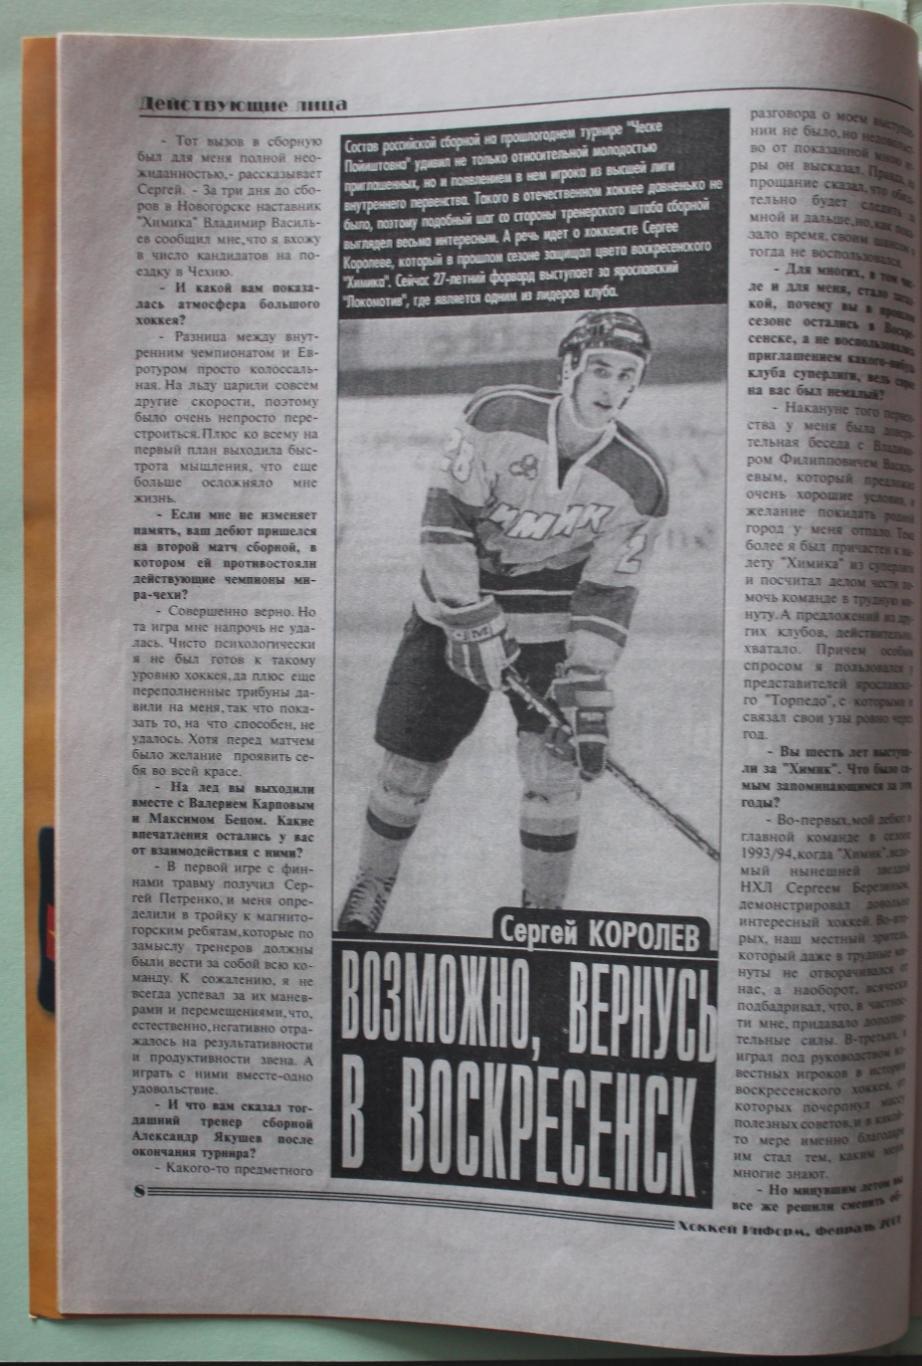 Еженедельник Хоккей-информ № 4 (463) февраль 2001 1